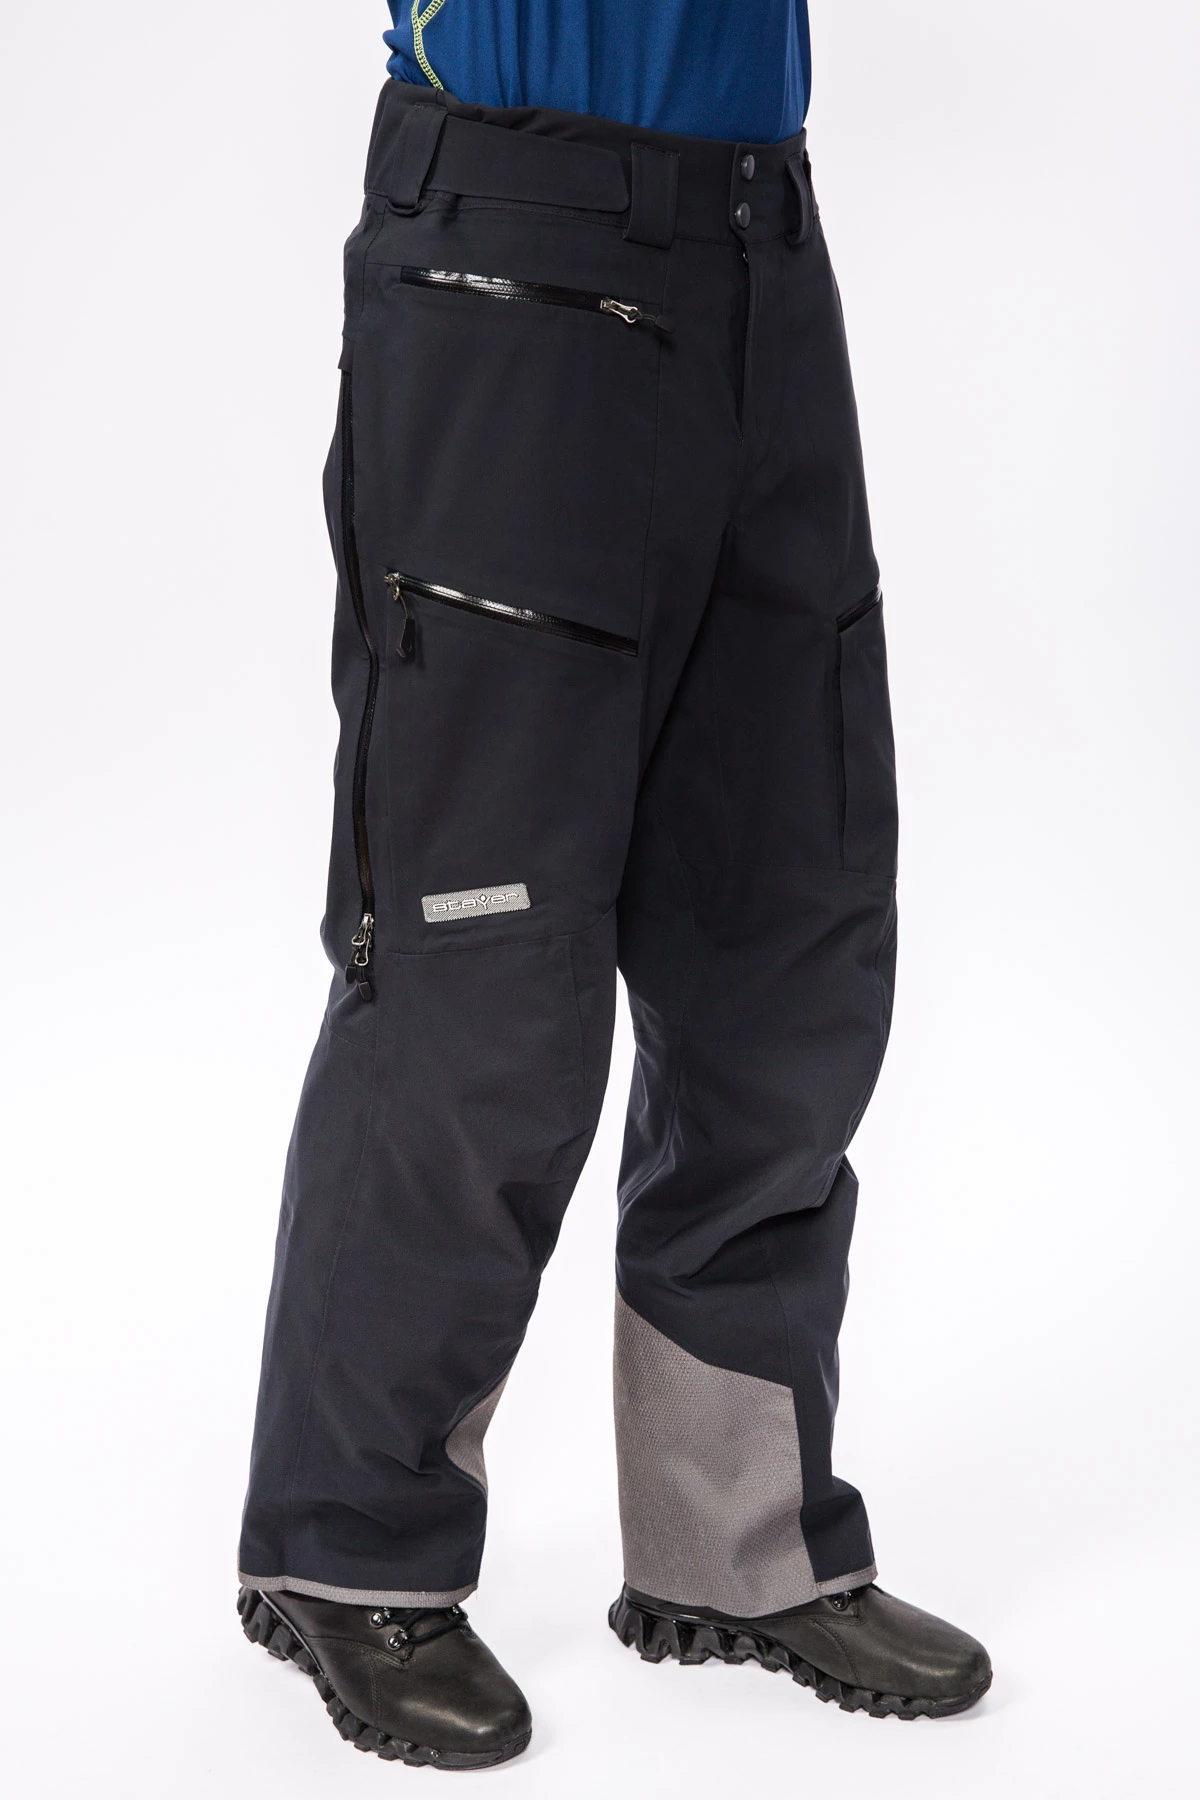 Мембранные брюки Dermizax 3L мужские 17-20915 10 изображение 3